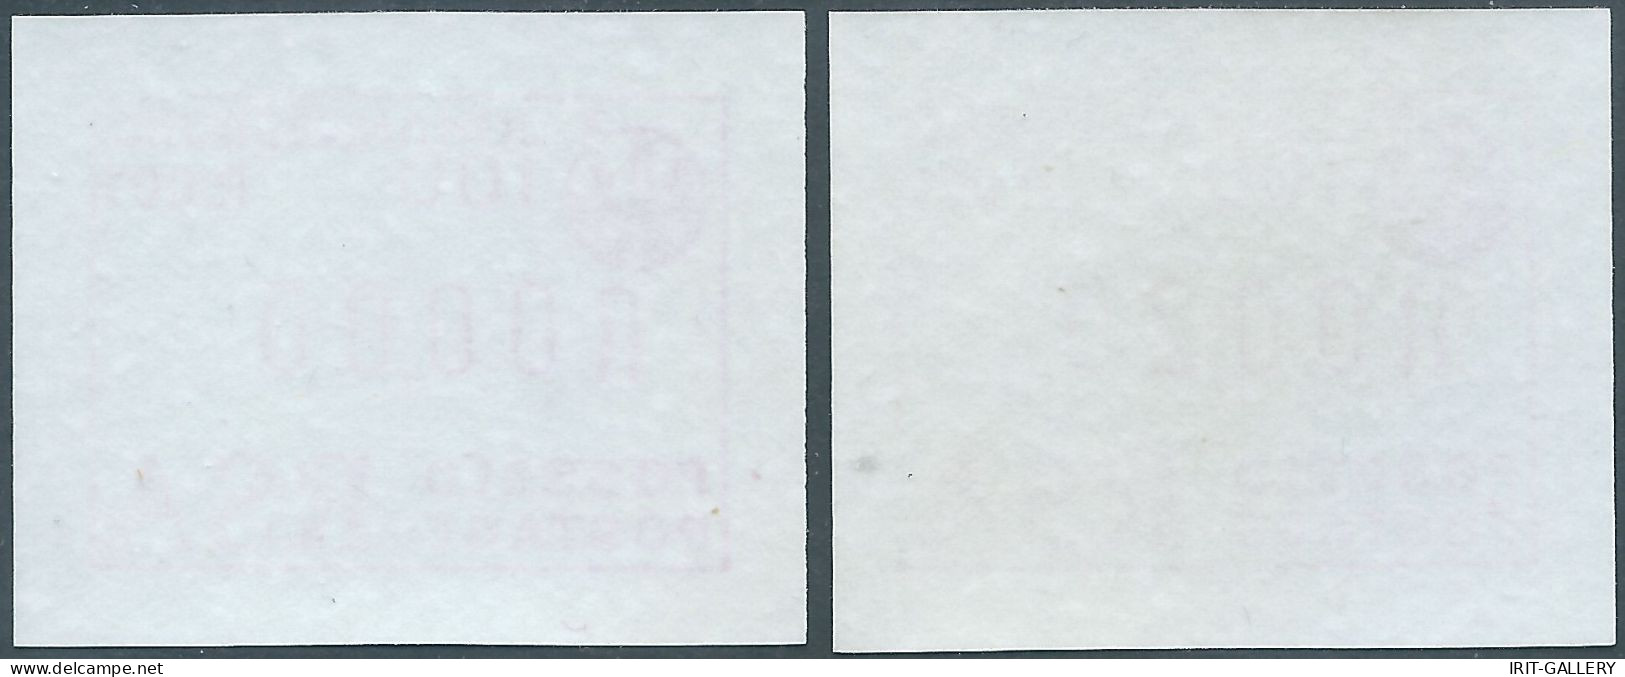 SOUTH AFRICA-AFRIQUE DU SUD-SUD AFRICA,JOHANNESBURG 1986-1987 TWO Frame Label Stamp(RSA)SIMPLE CARD,MNH - Ongebruikt